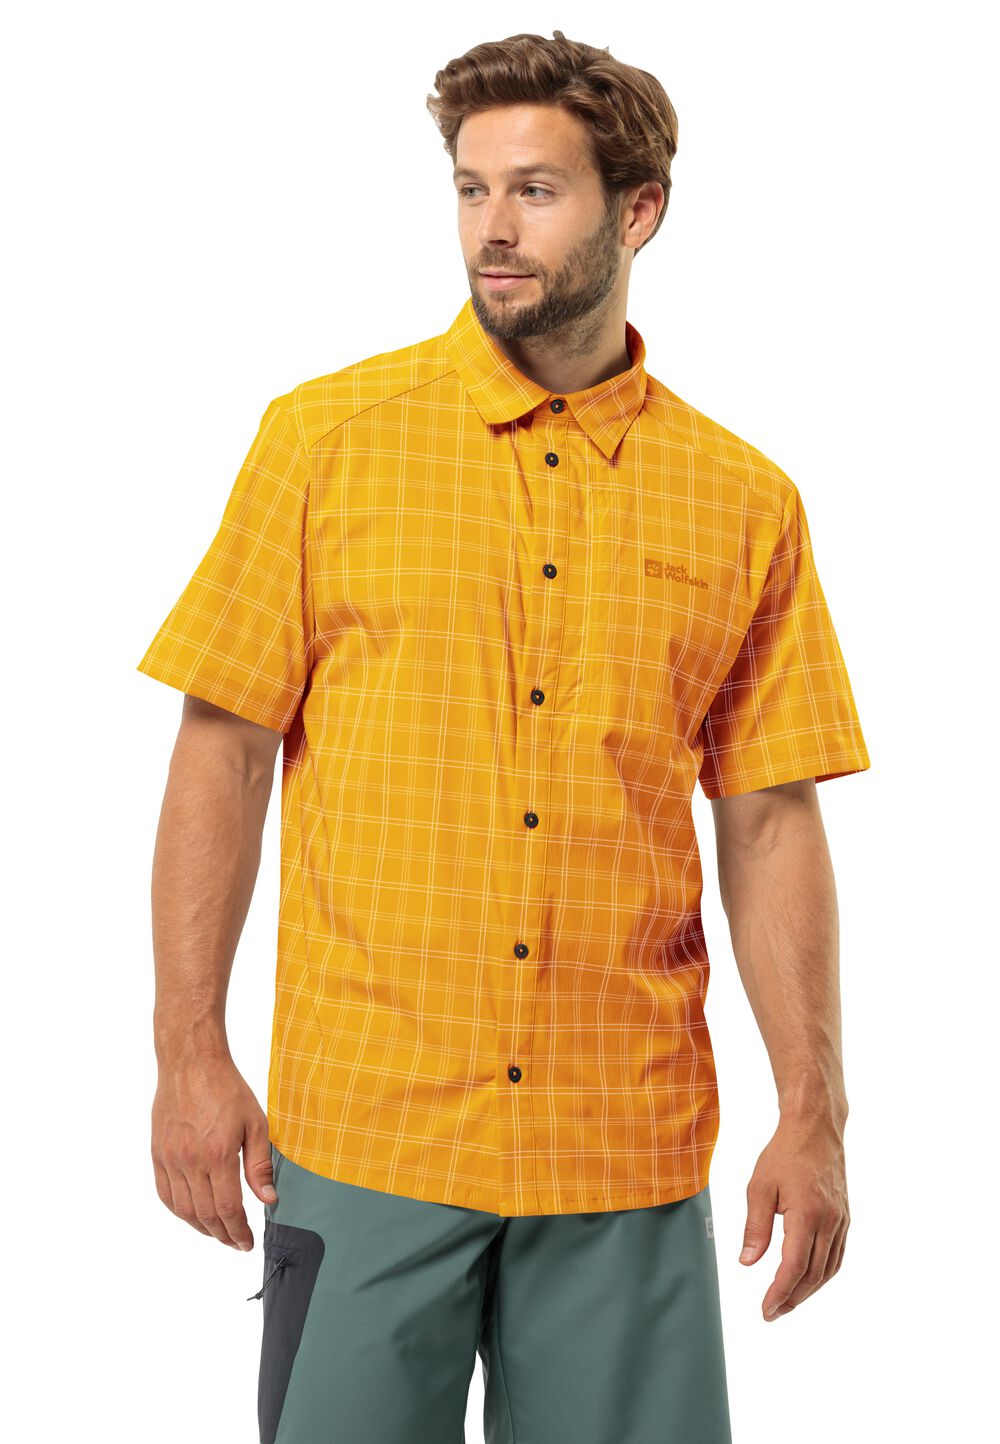 Jack Wolfskin Norbo S S Shirt Men Overhemd met korte mouwen Heren XL bruin curry check